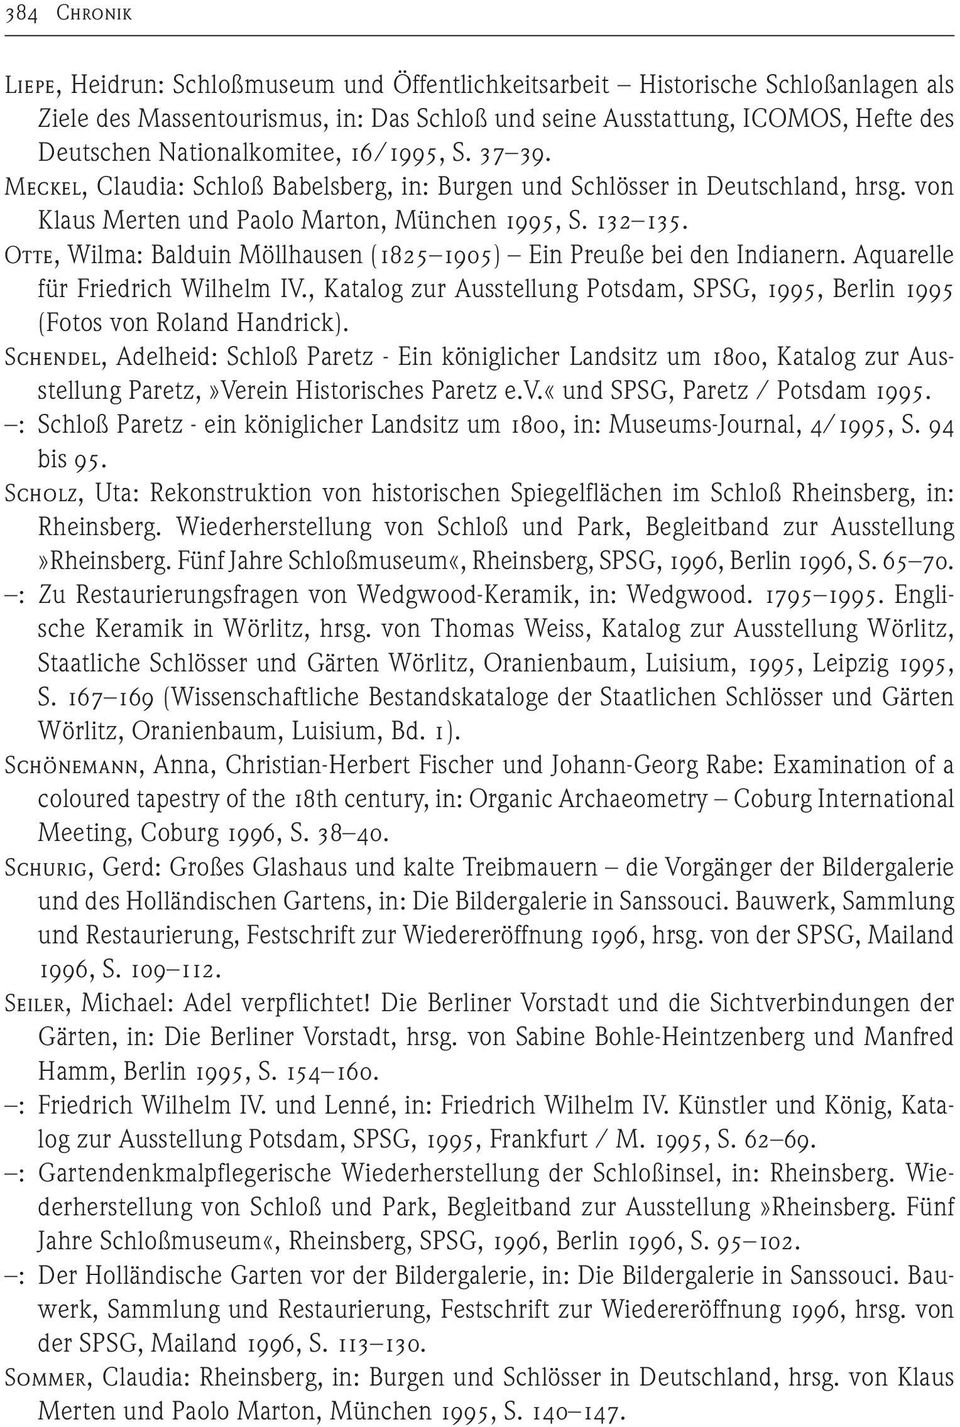 Otte, Wilma: Balduin Möllhausen (1825 1905) Ein Preuße bei den Indianern. Aquarelle für Friedrich Wilhelm IV., Katalog zur Ausstellung Potsdam, SPSG, 1995, Berlin 1995 (Fotos von Roland Handrick).